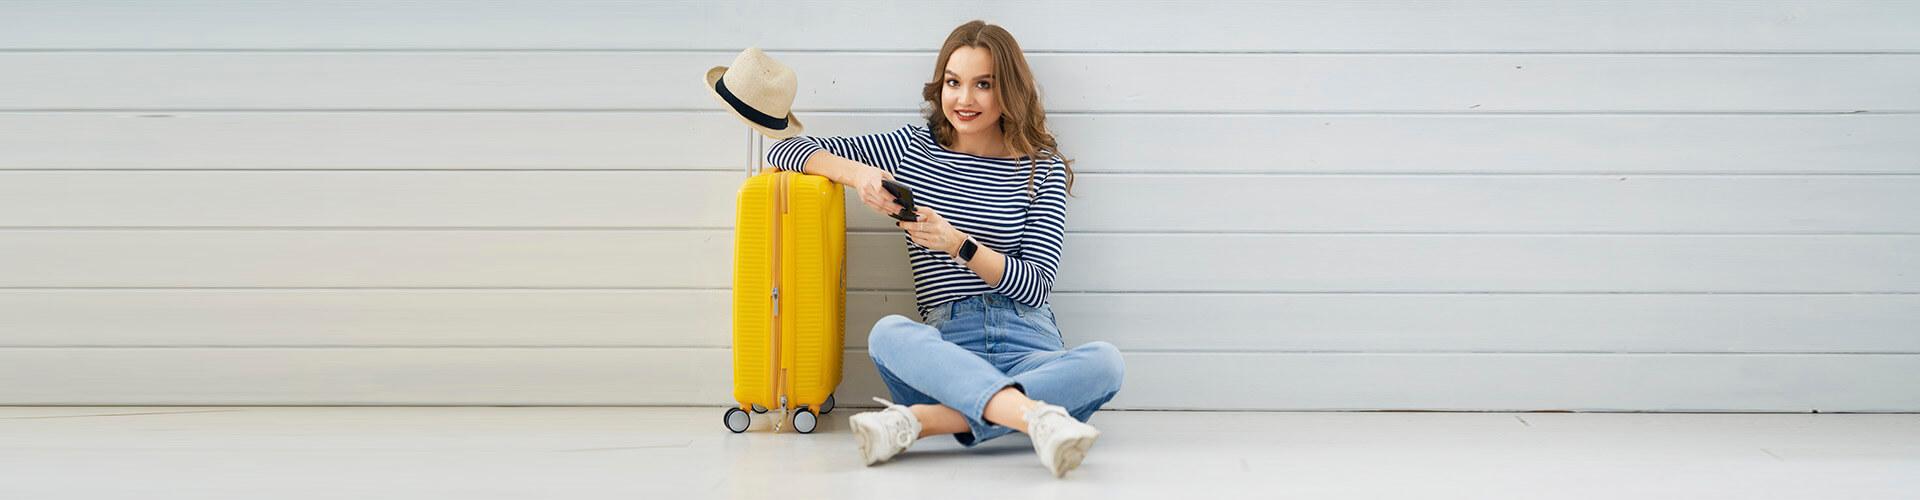 Seguro de Asistencia en Viaje - Mujer joven sentada en el suelo con el movil en la mano, junto a su maleta y un sombrero preparando un viaje